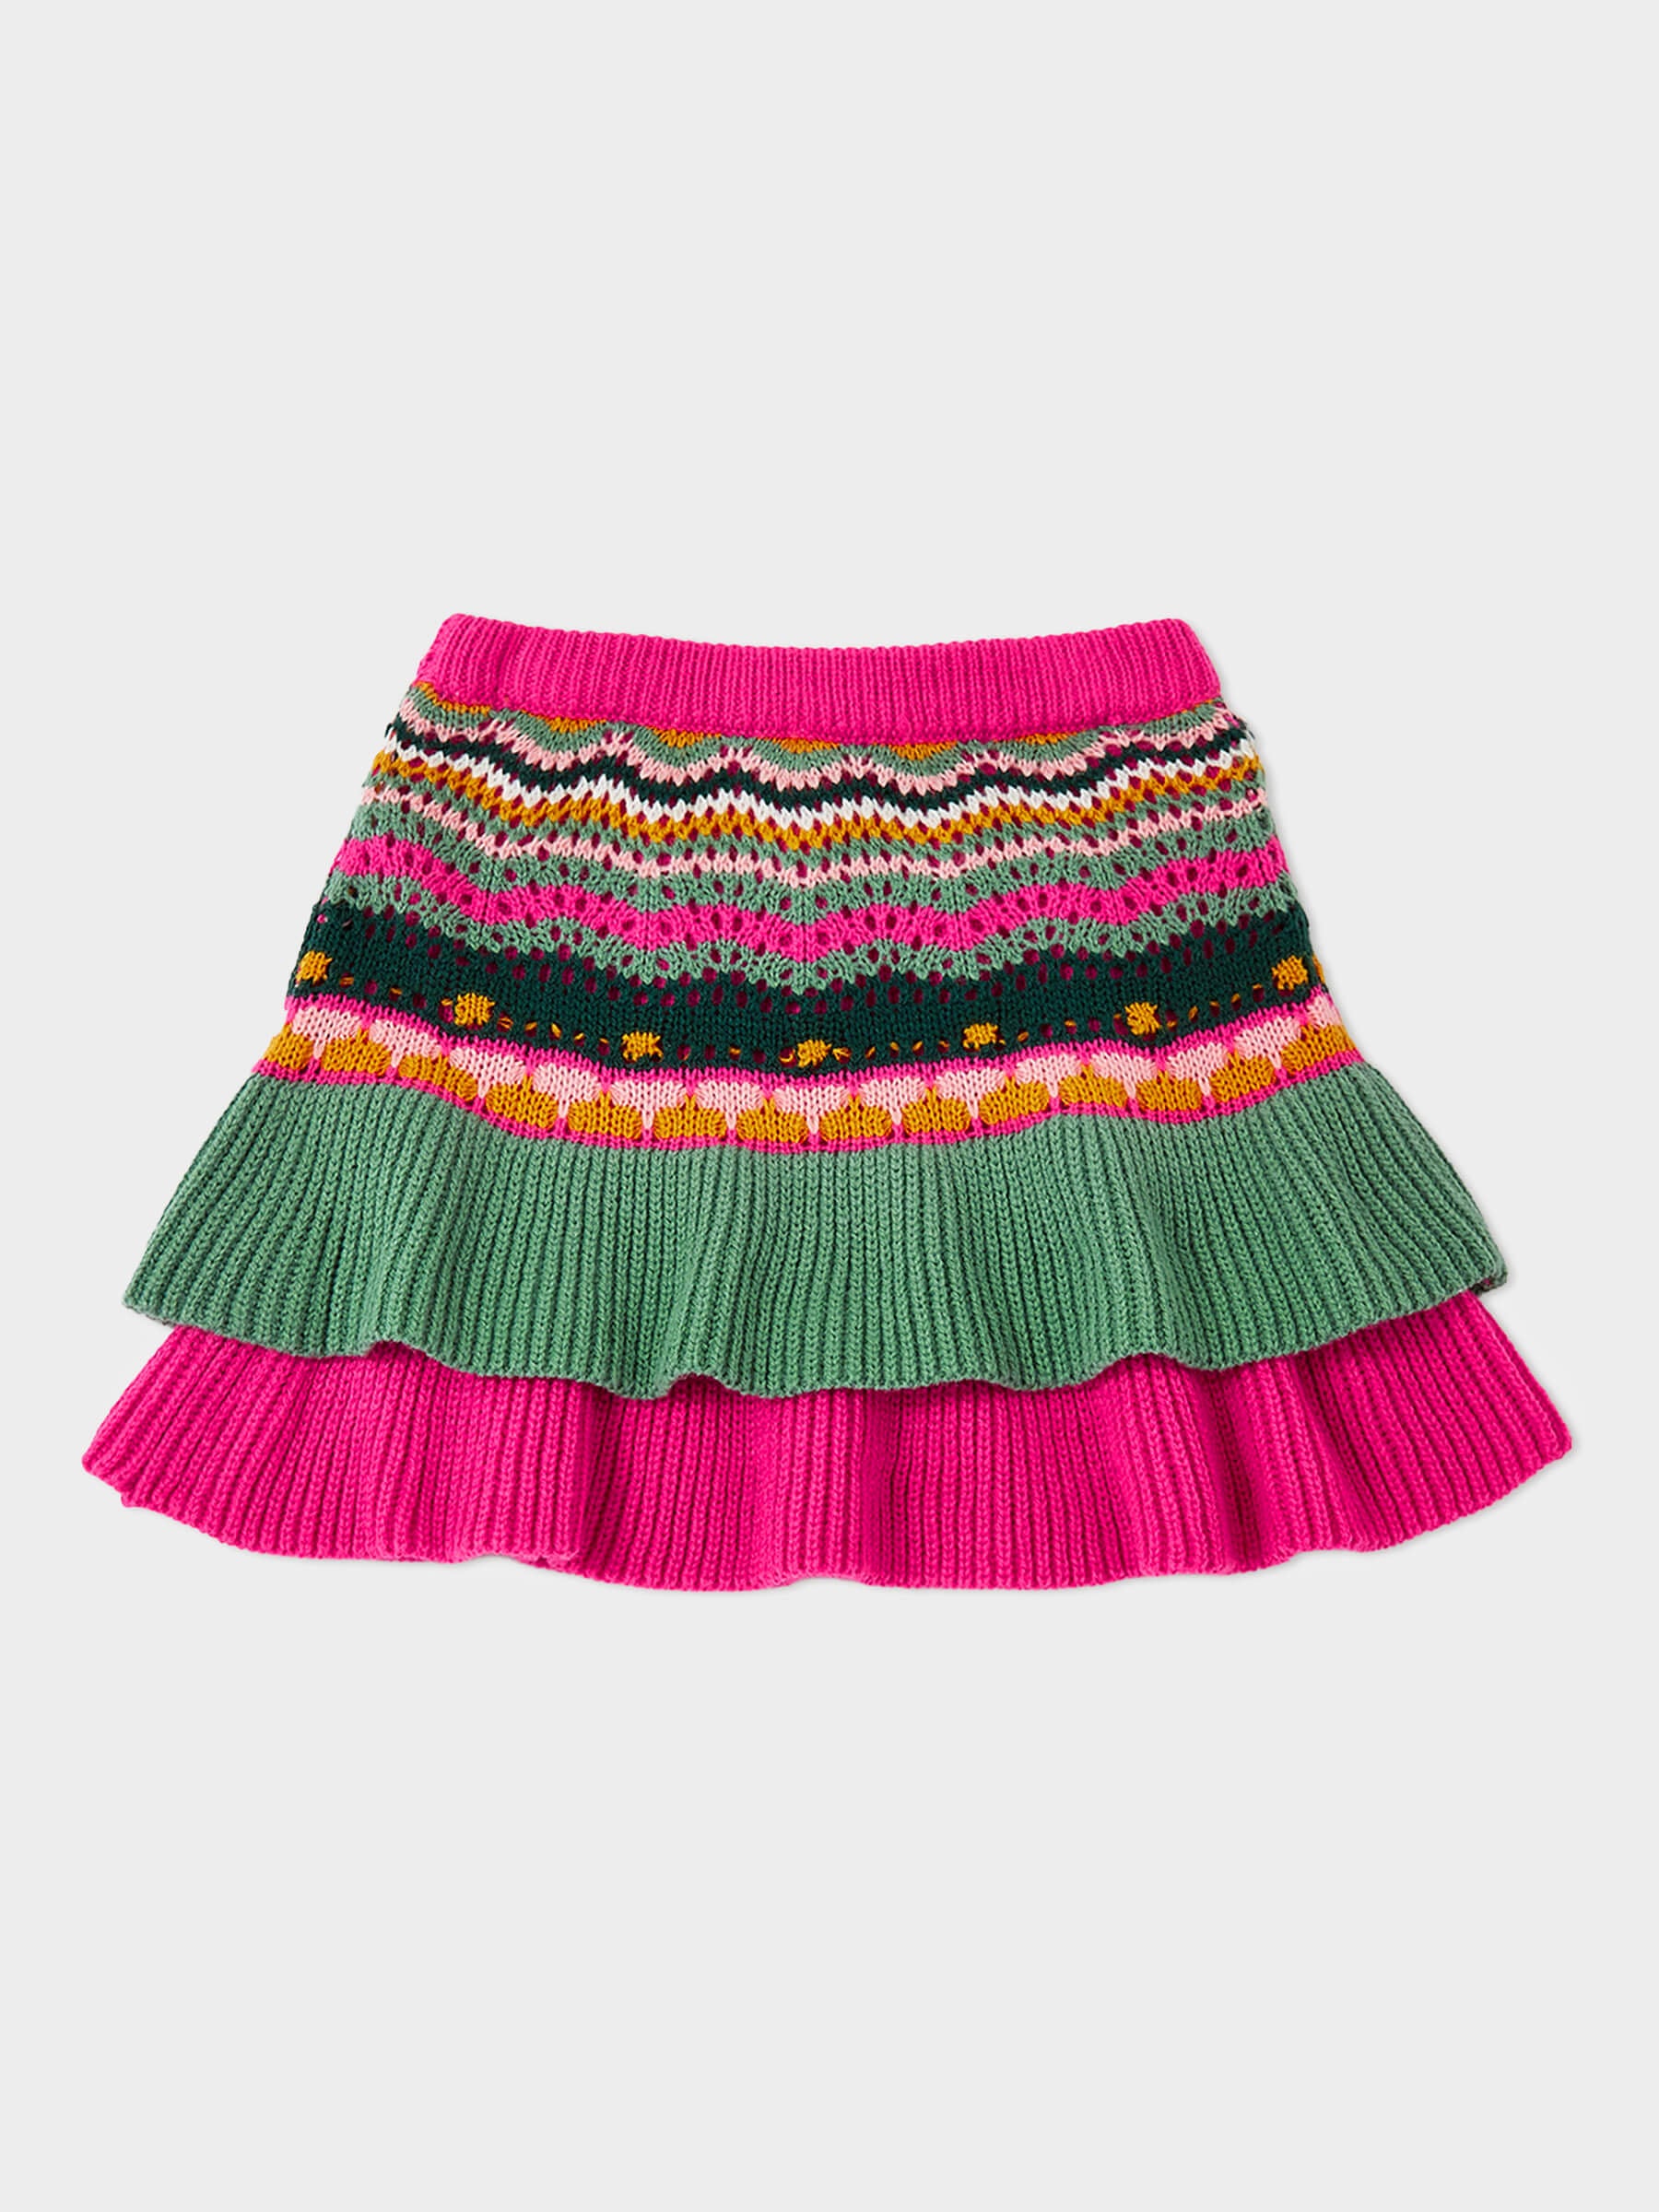 Orbit Knitted Skirt